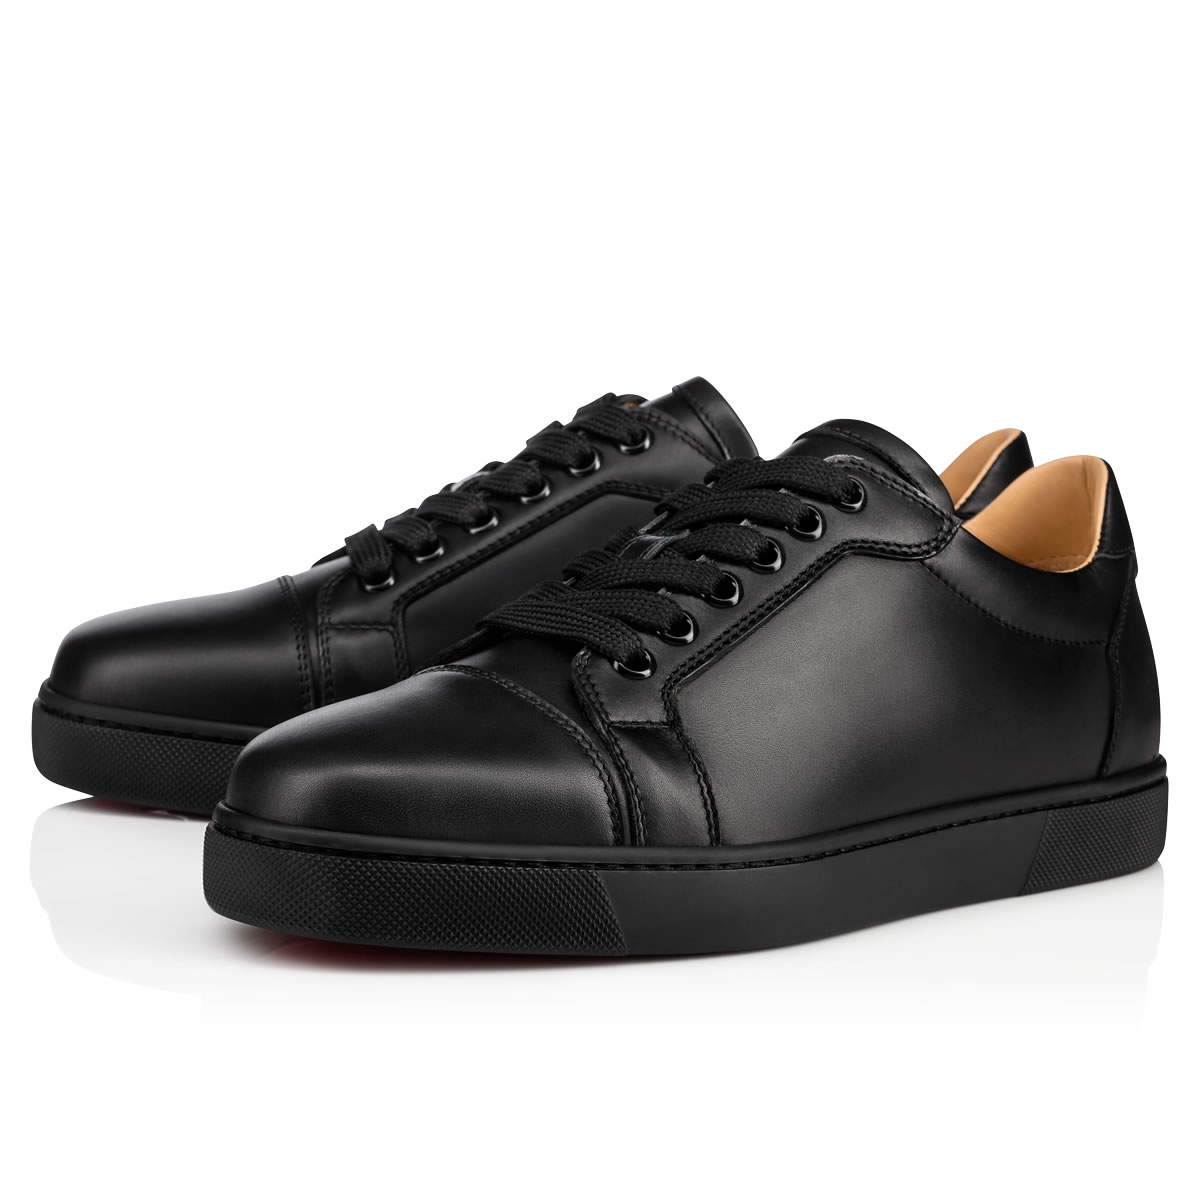 Vieira - Sneakers - Calf leather - Black - Christian Louboutin